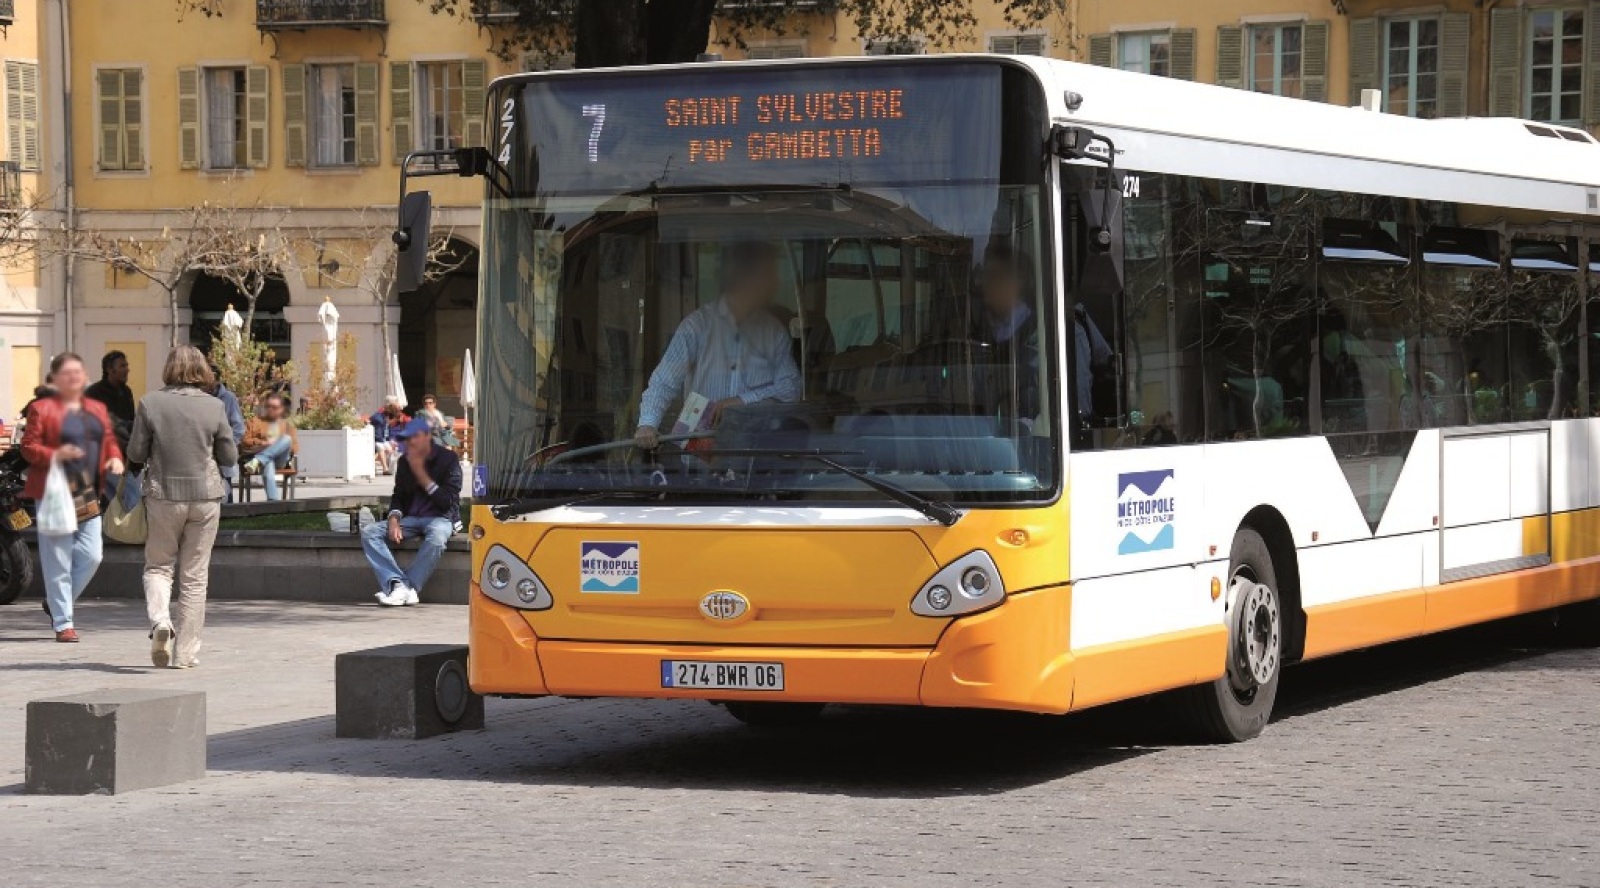 Metrobus remporte les bus de Nice  Image  CB News